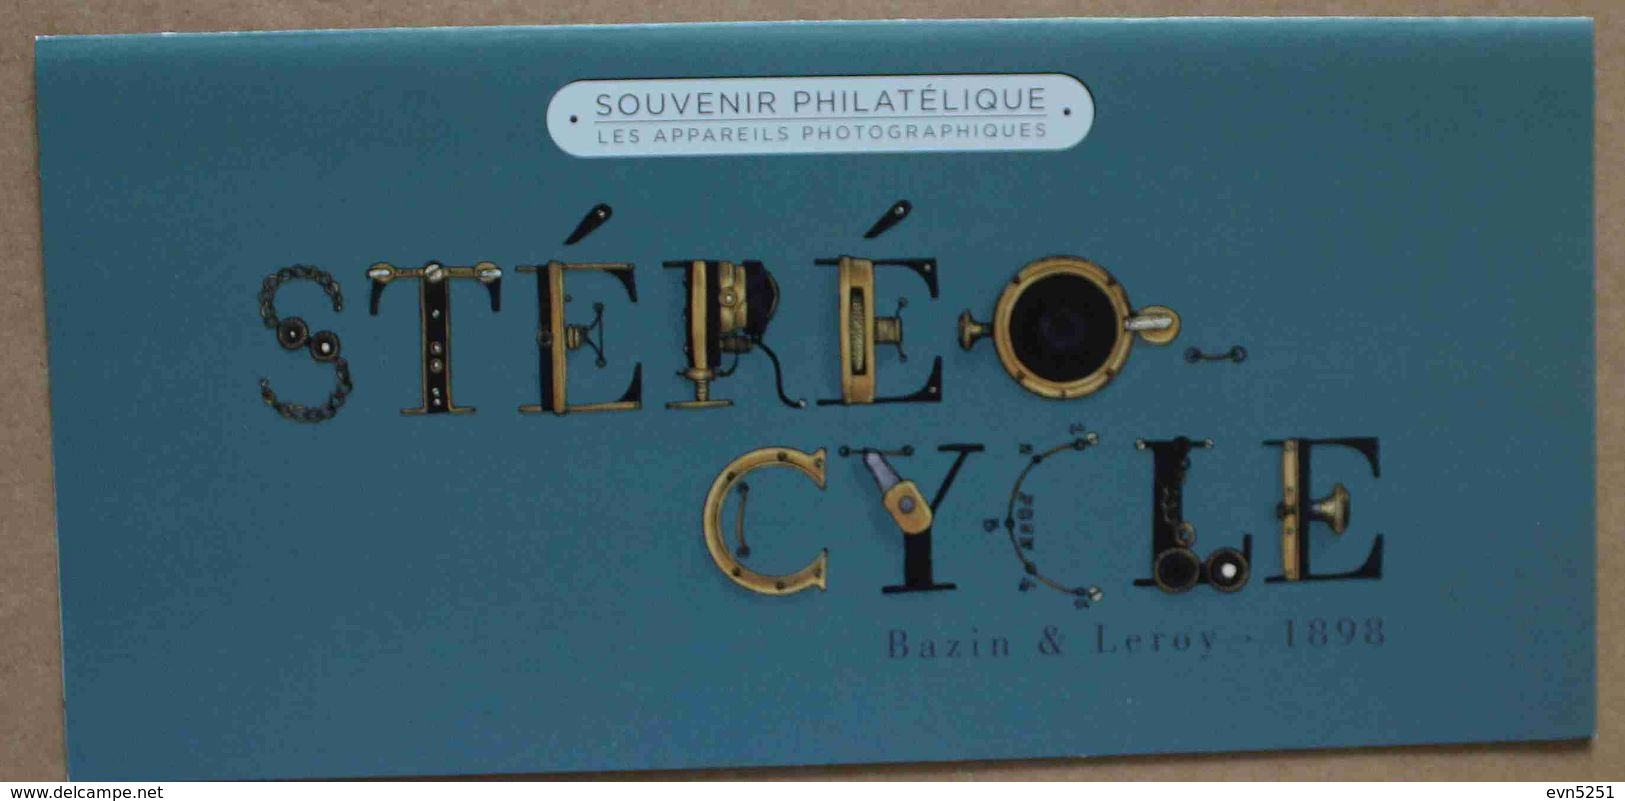 BS14-104 : Bloc Souvenir / Les Appareils Photographiques - Stéréocycle, 1898 - Bloques Souvenir